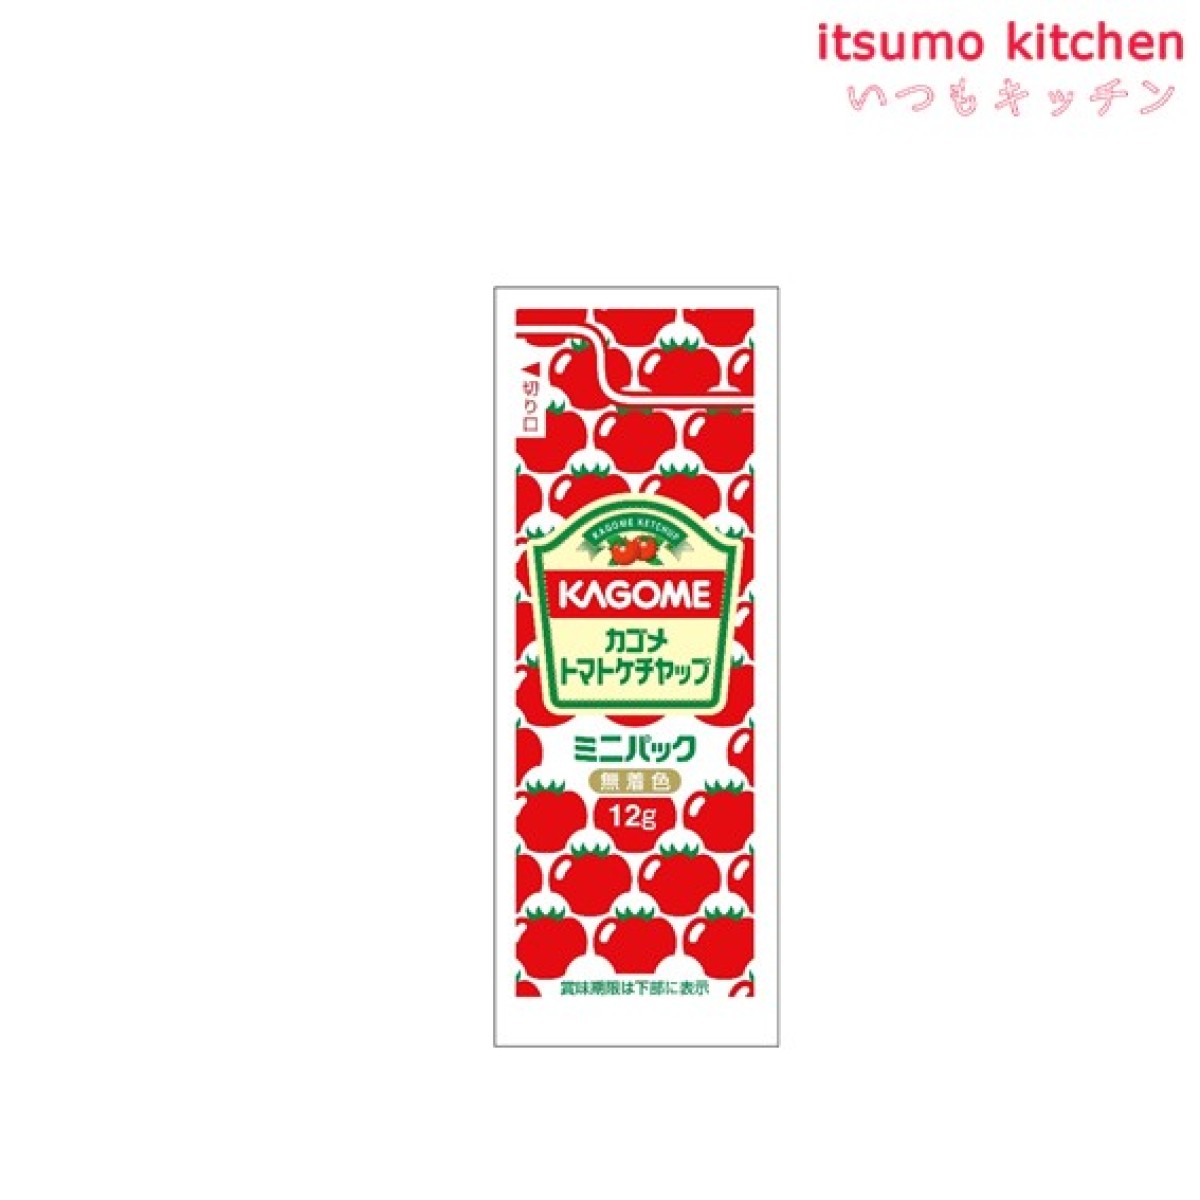 171060 トマトケチャップ特級ミニパック 12gx40袋 カゴメ - いつもキッチン